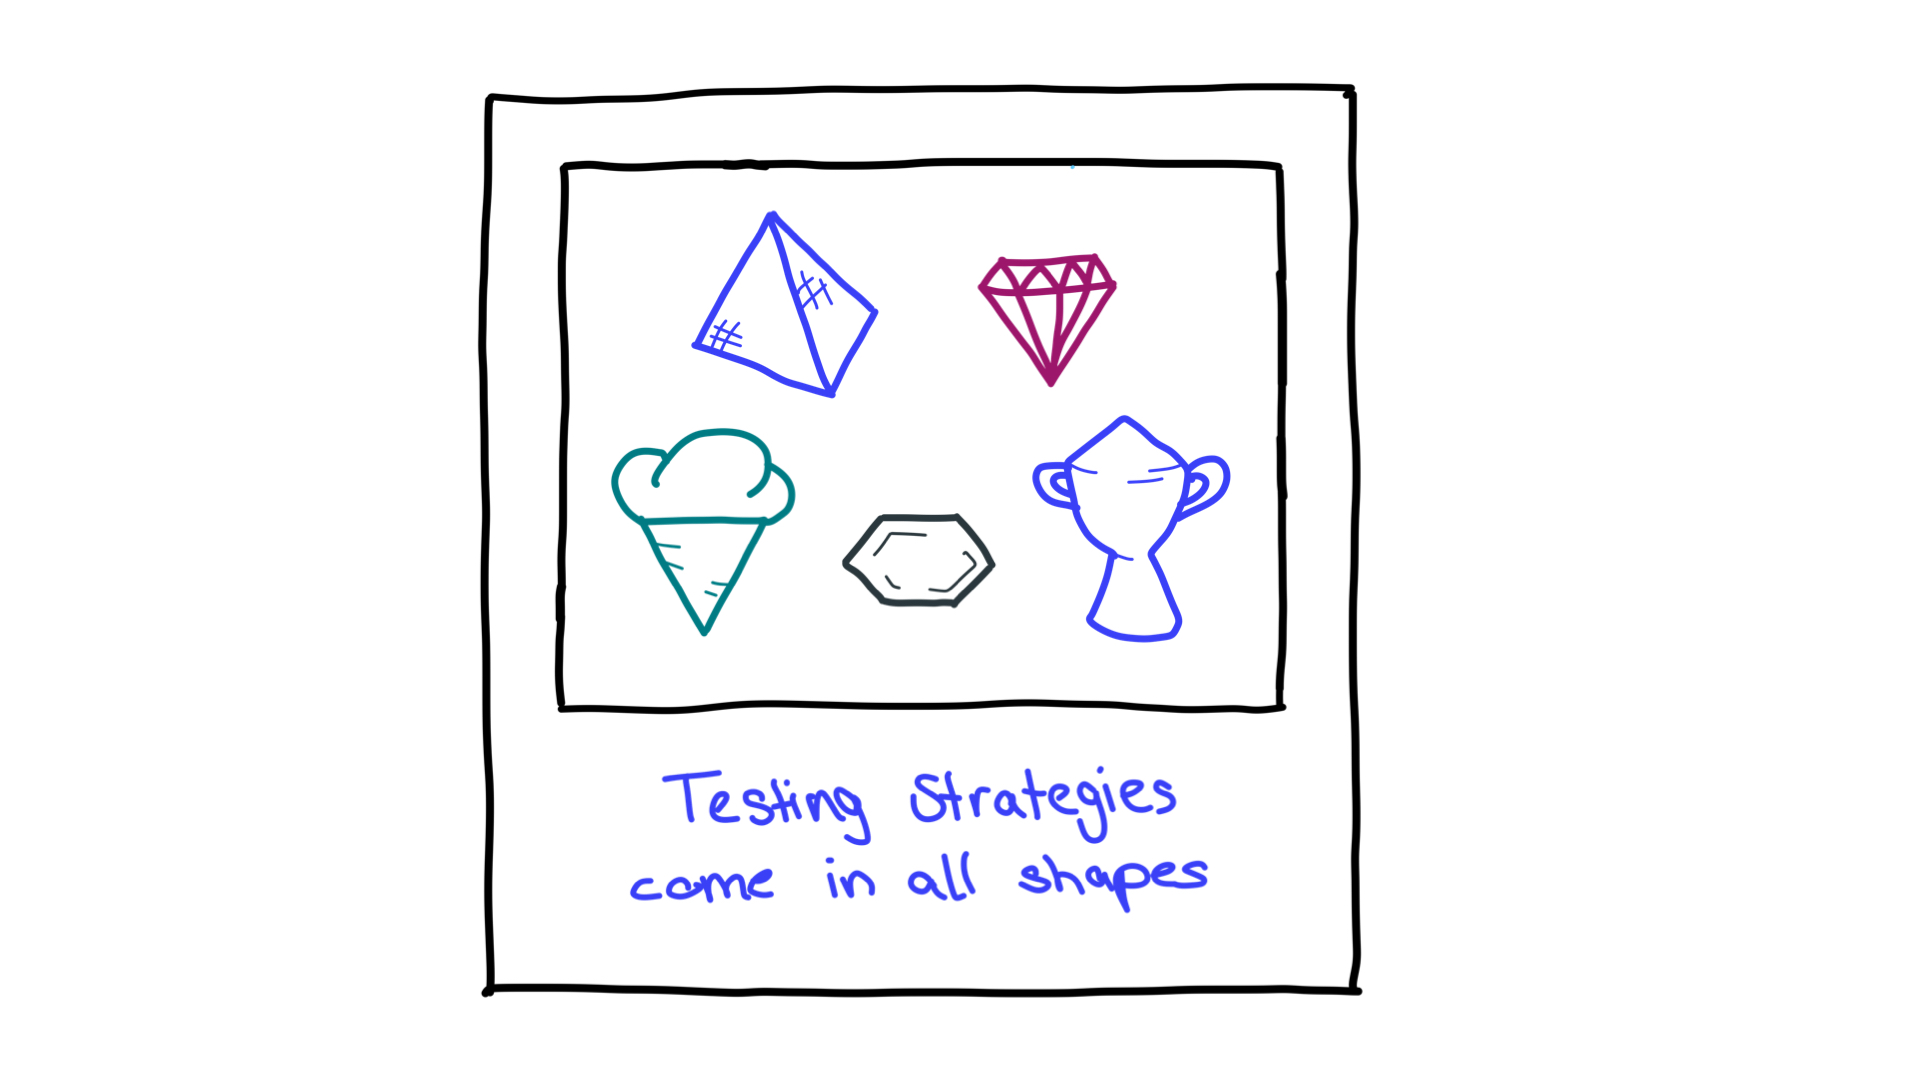 ピラミッド、ダイヤモンド、アイスコーン、ハニカム、トロフィーなど、さまざまな形。テスト戦略を表しています。